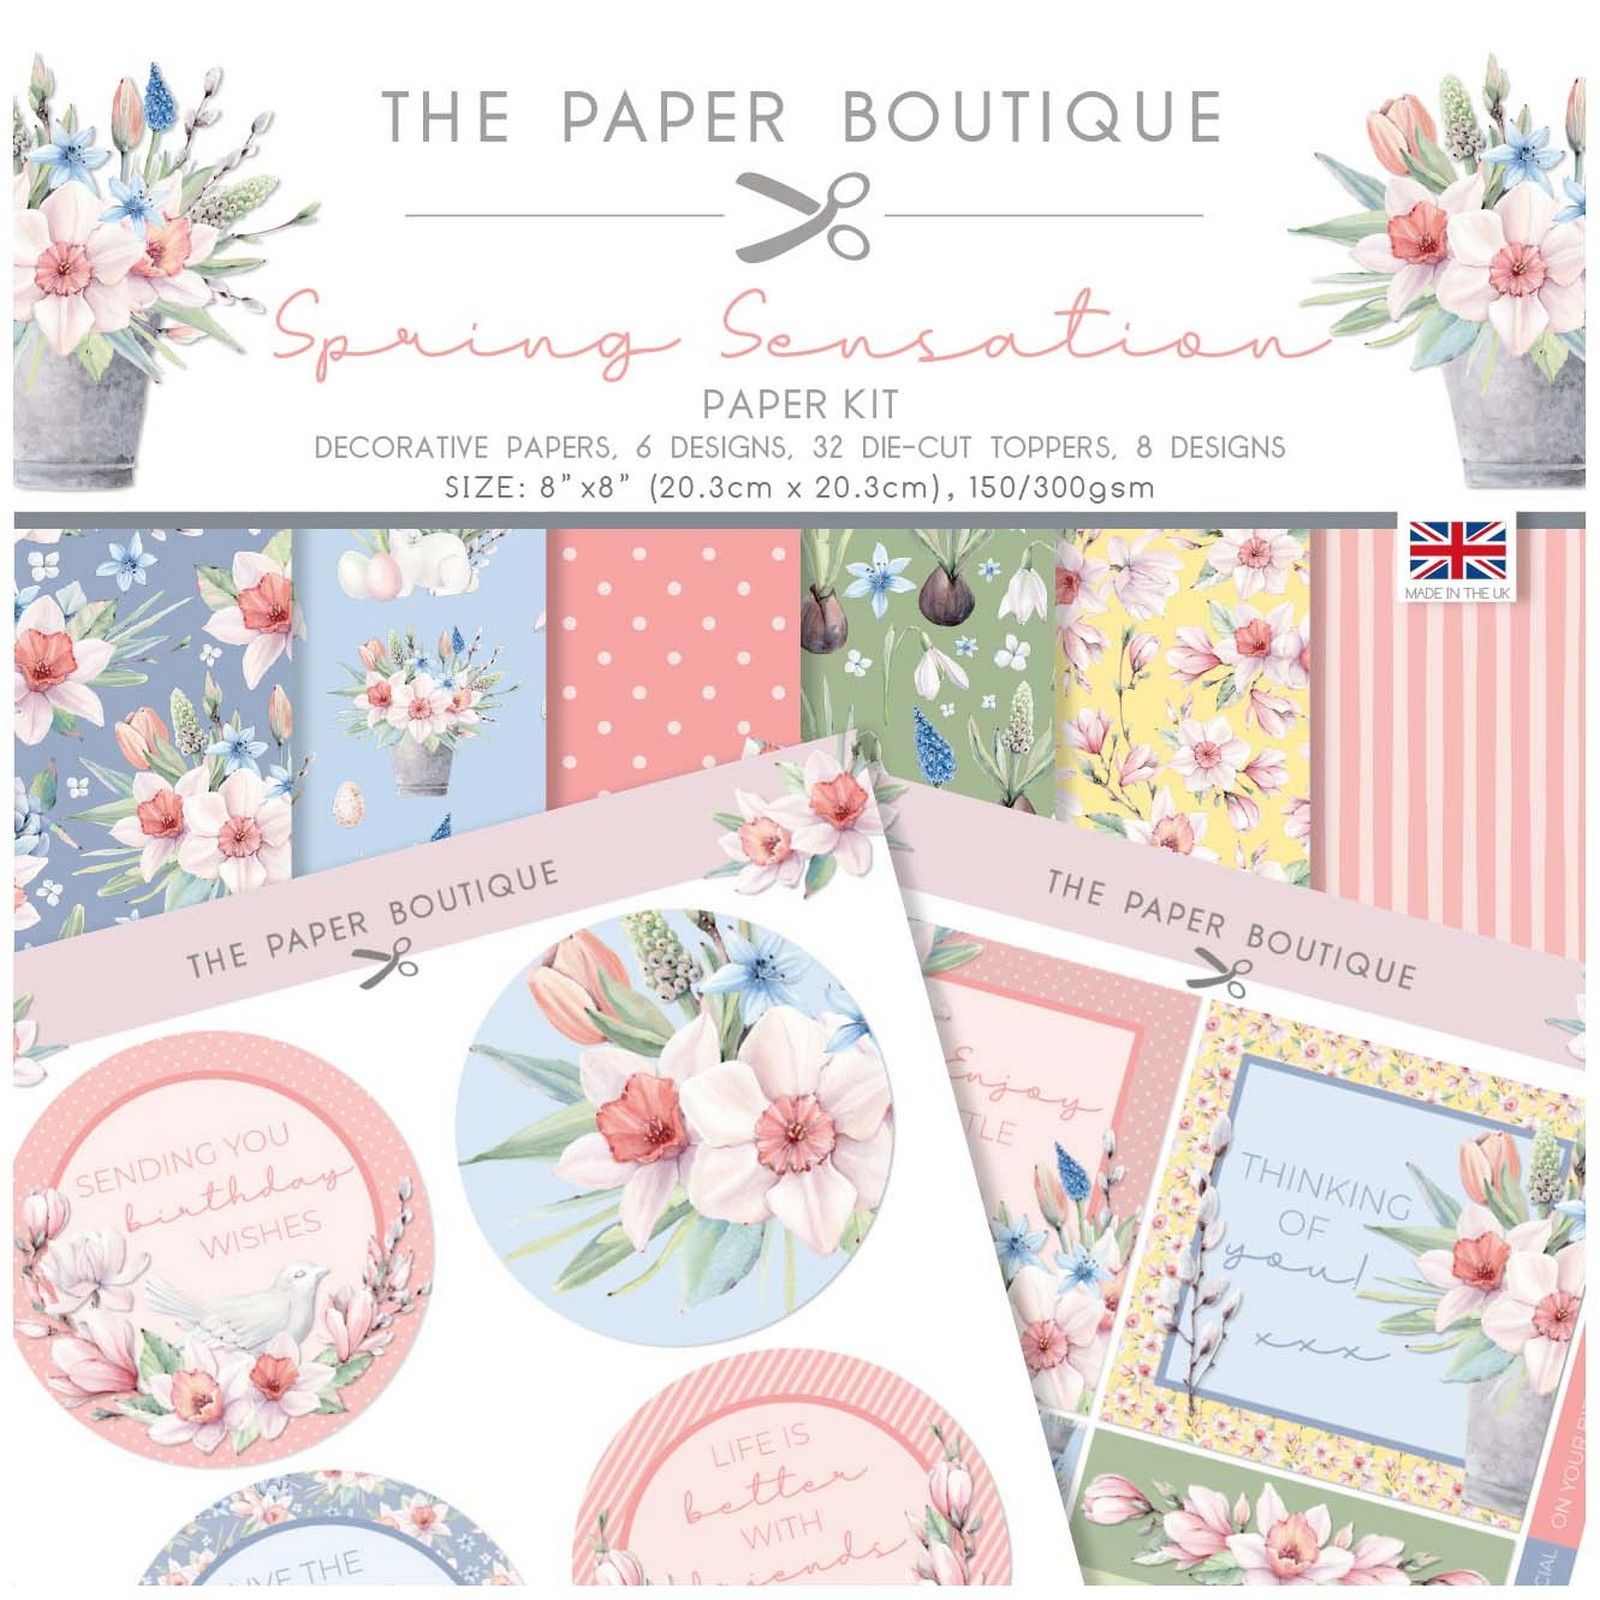 The Paper Boutique • Spring Sensation Paper Kit